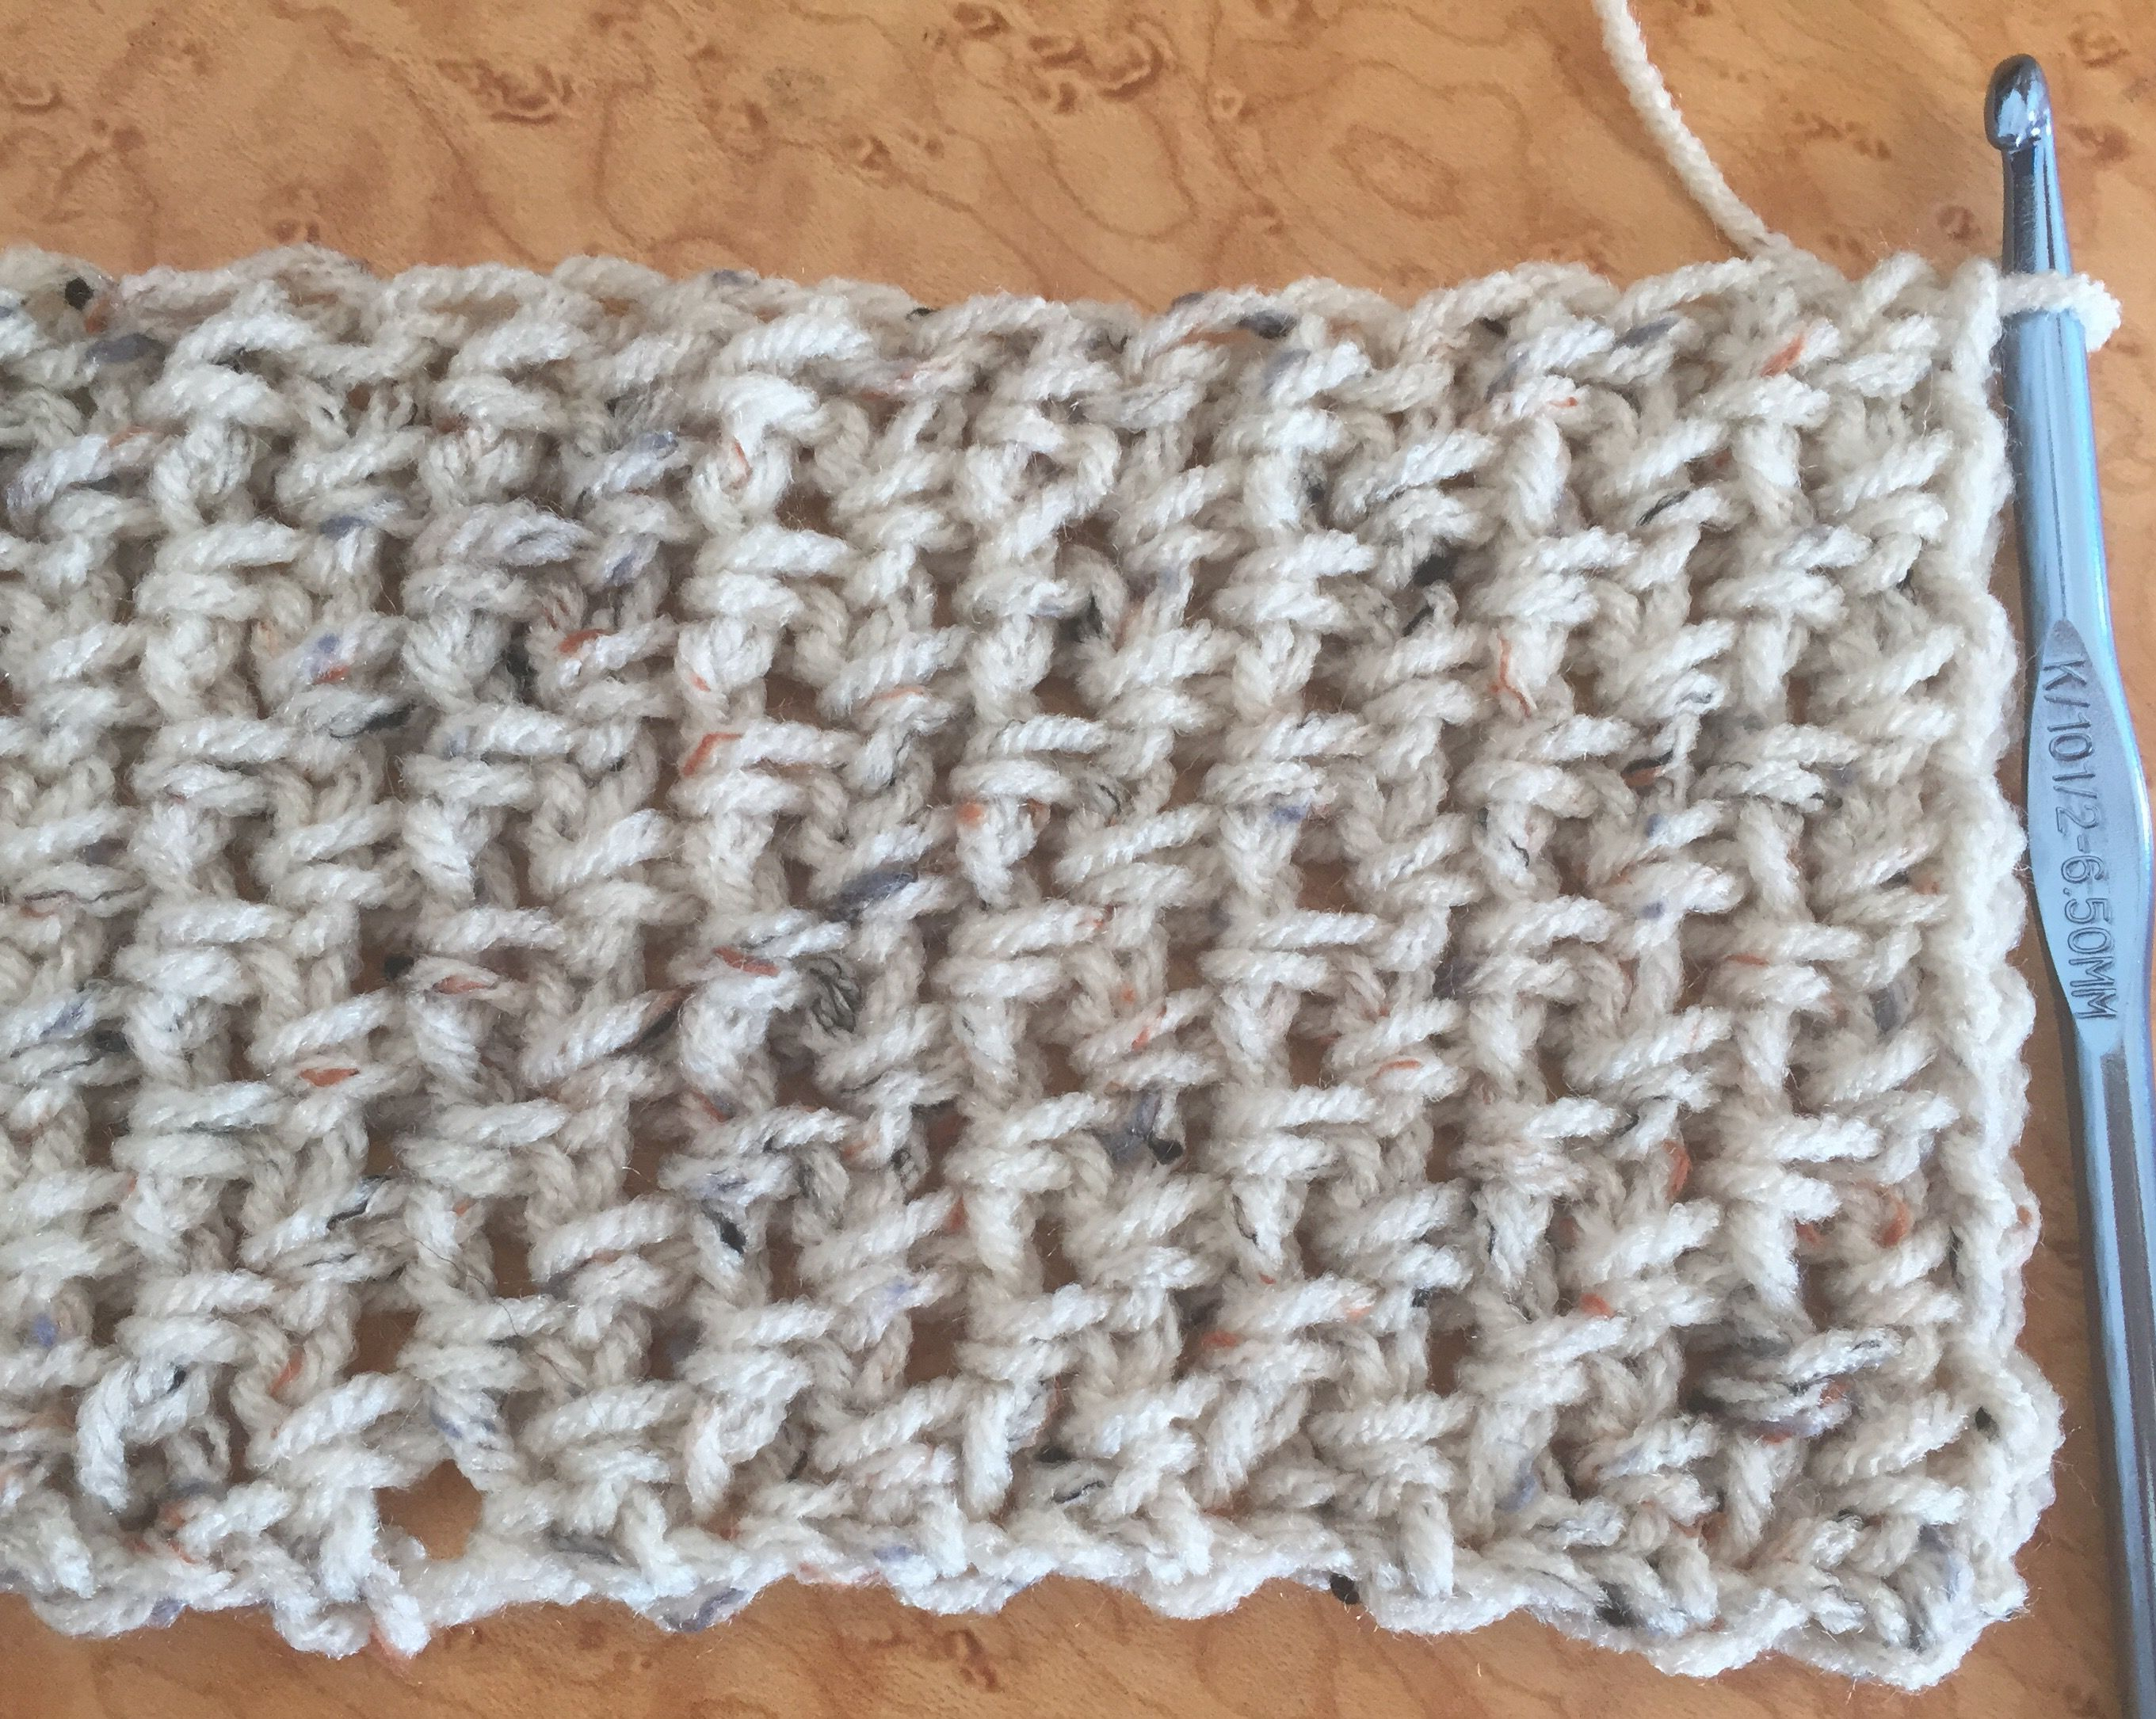 Easy Crochet Scarf Free Pattern Using Moss Stitch - Free Printable Crochet Scarf Patterns